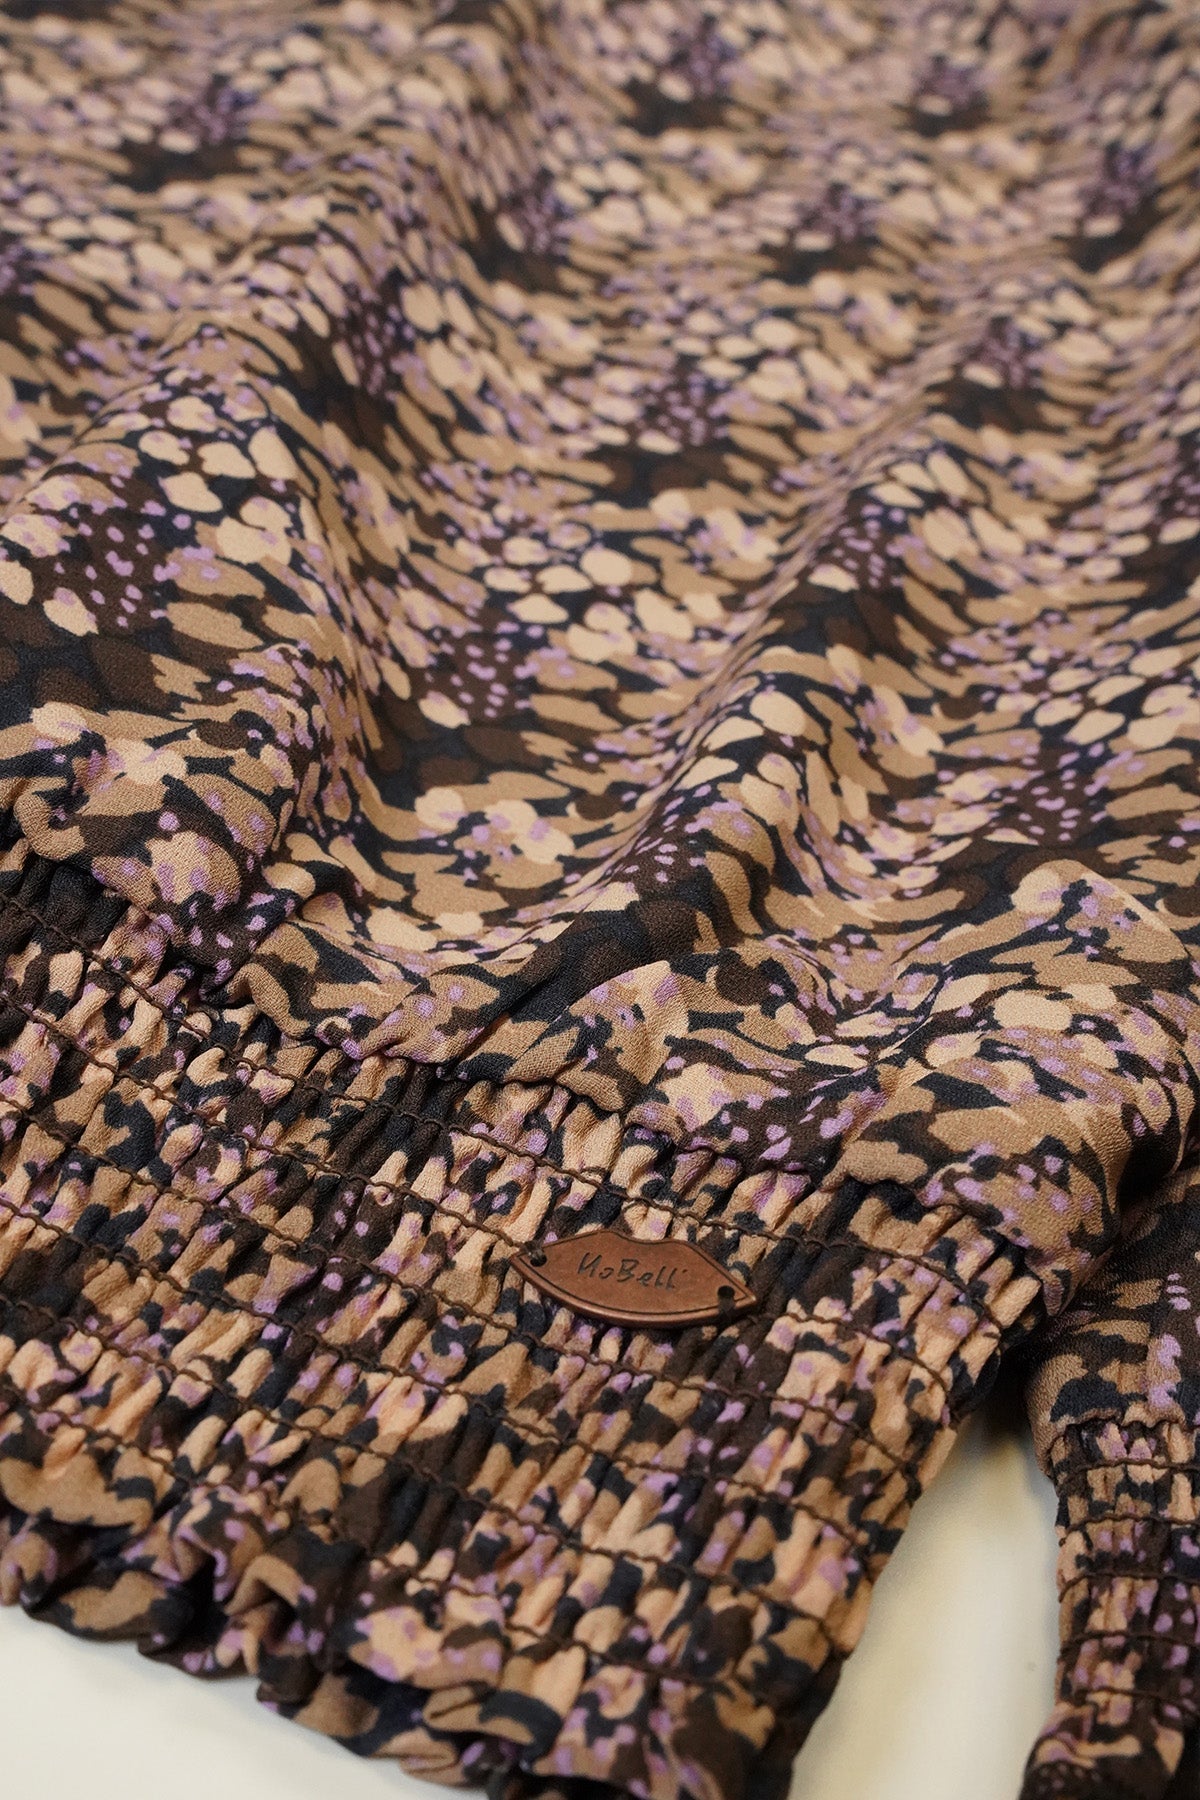 Meisjes Tommy girls printed blouse brown van NoBell in de kleur Dark Roast Brown in maat 170-176.